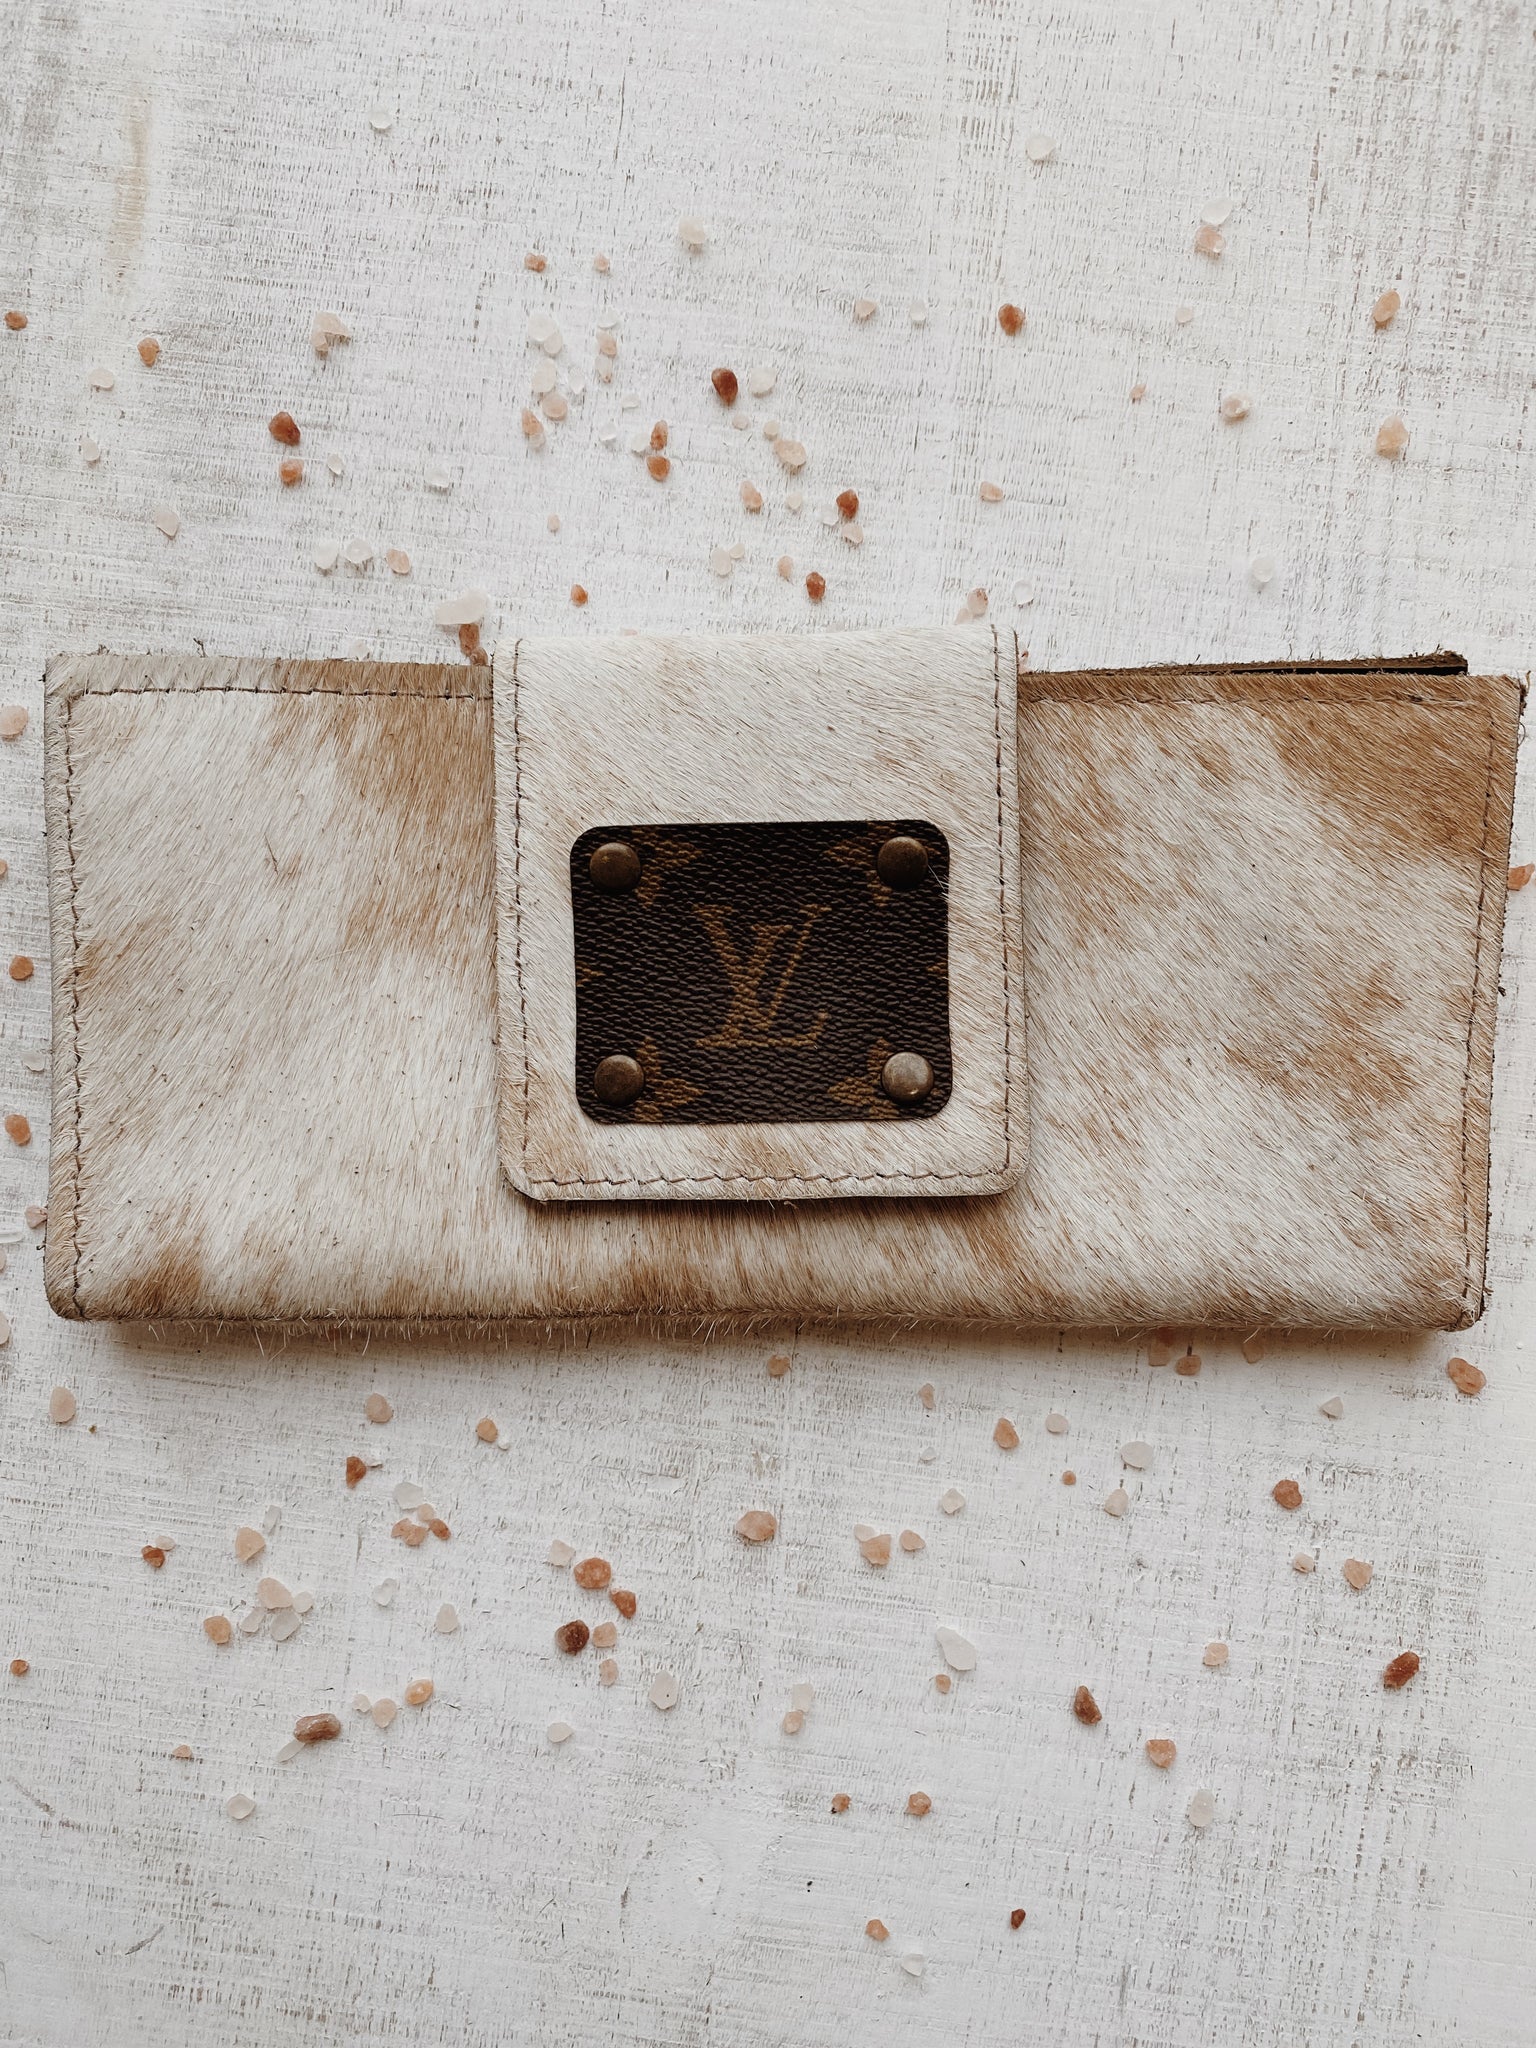 LV Large Cowhide Wallet